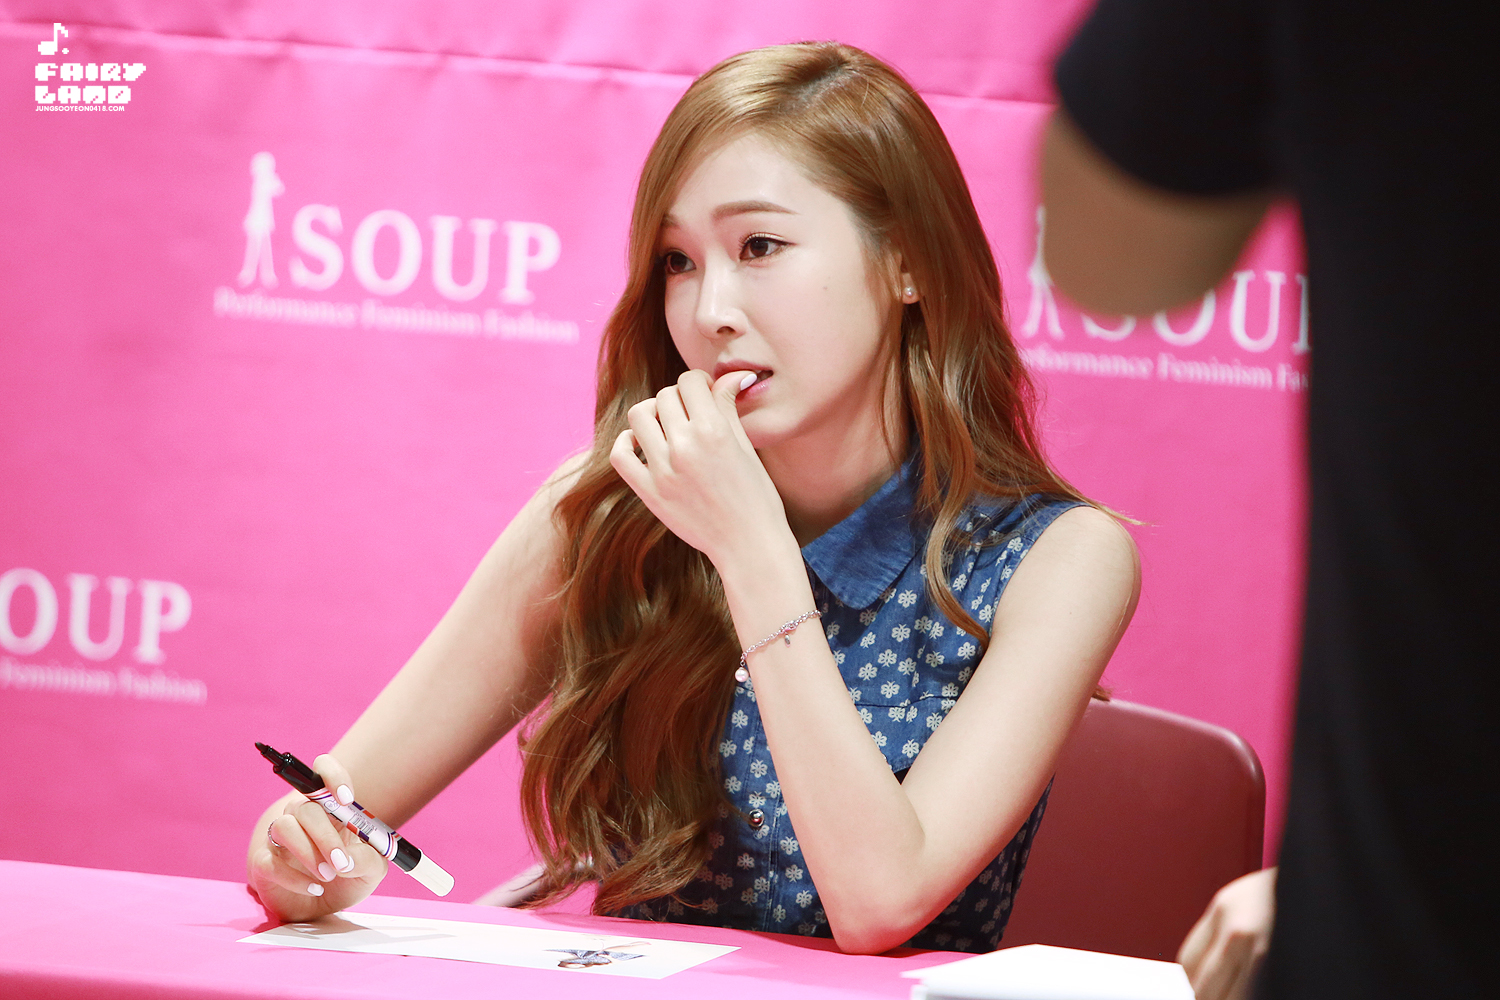 [PIC][14-06-2014]Jessica tham dự buổi fansign lần 2 cho thương hiệu "SOUP" vào trưa nay 2602F637539C68B9278041